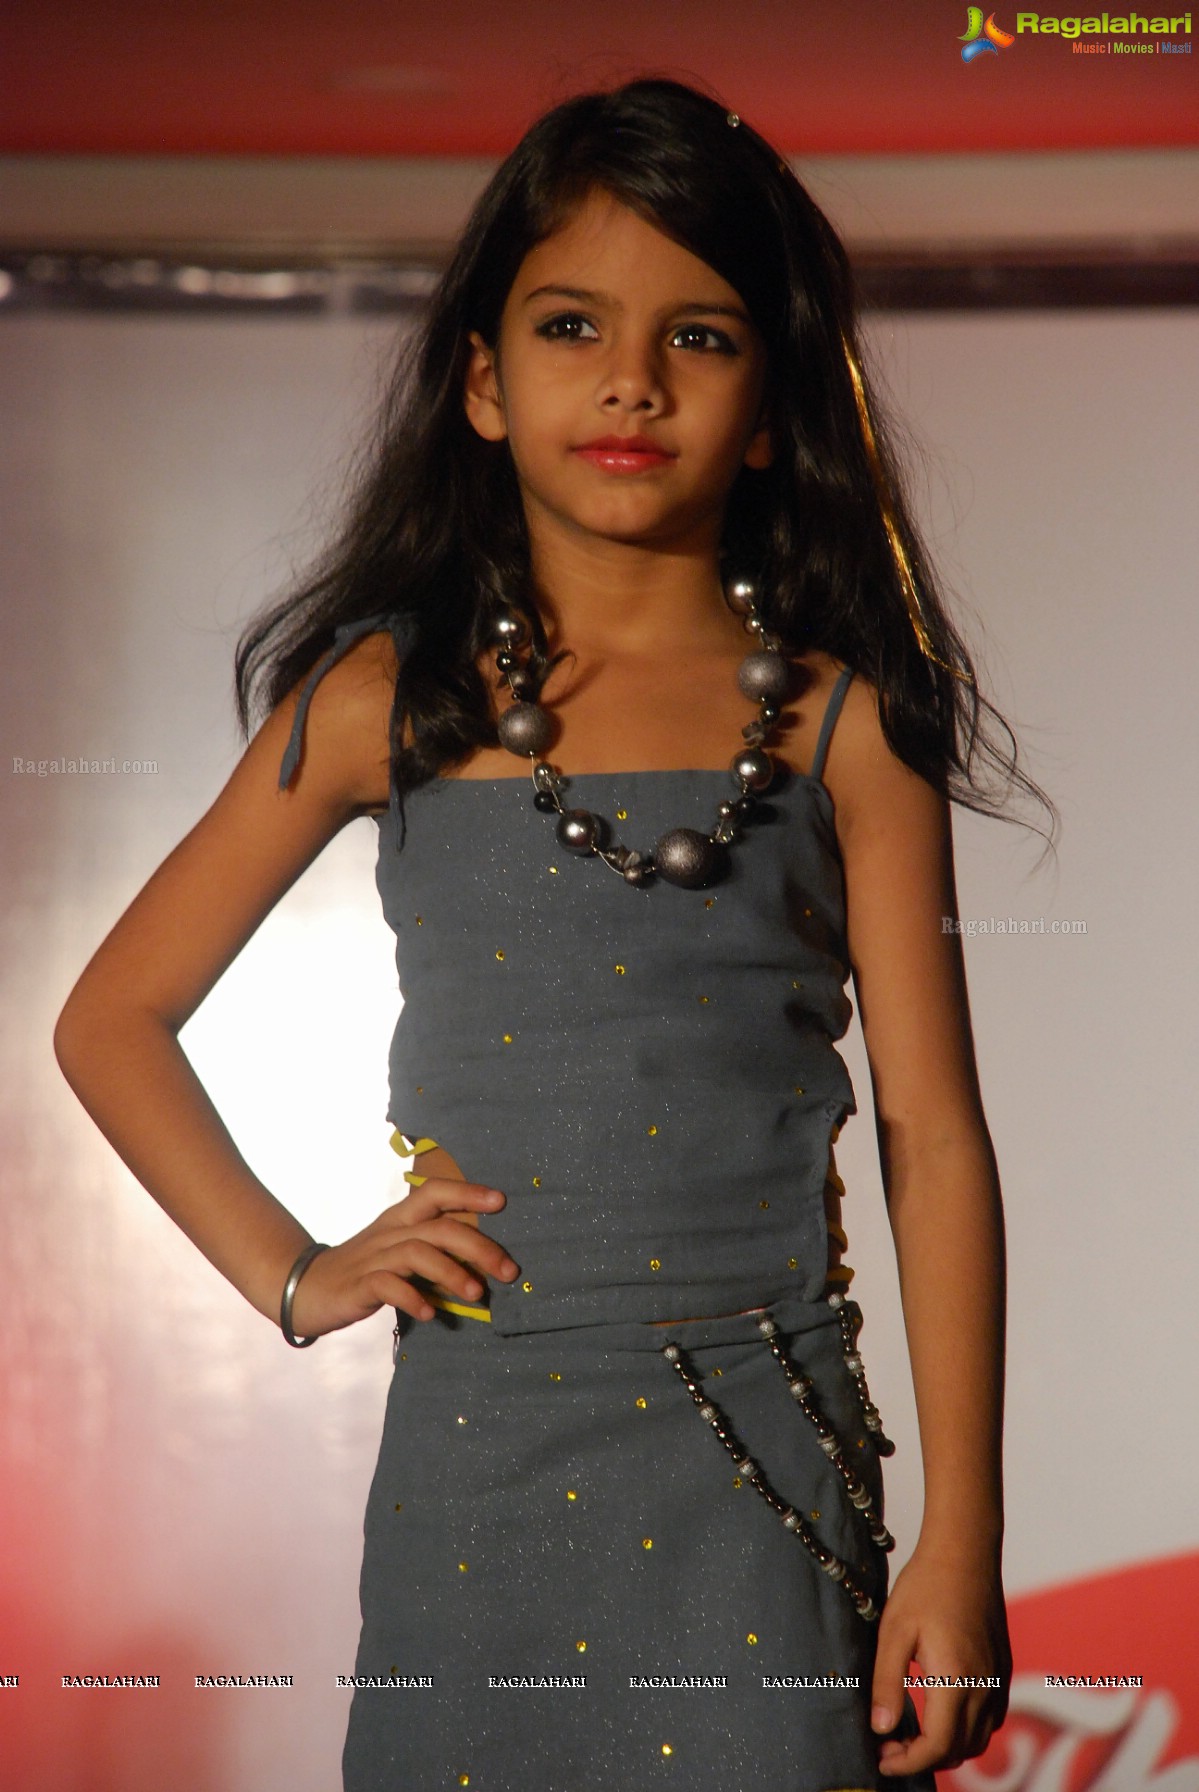 Instituto Design Innovation Kids Fashion Show 2014, Hyderabad